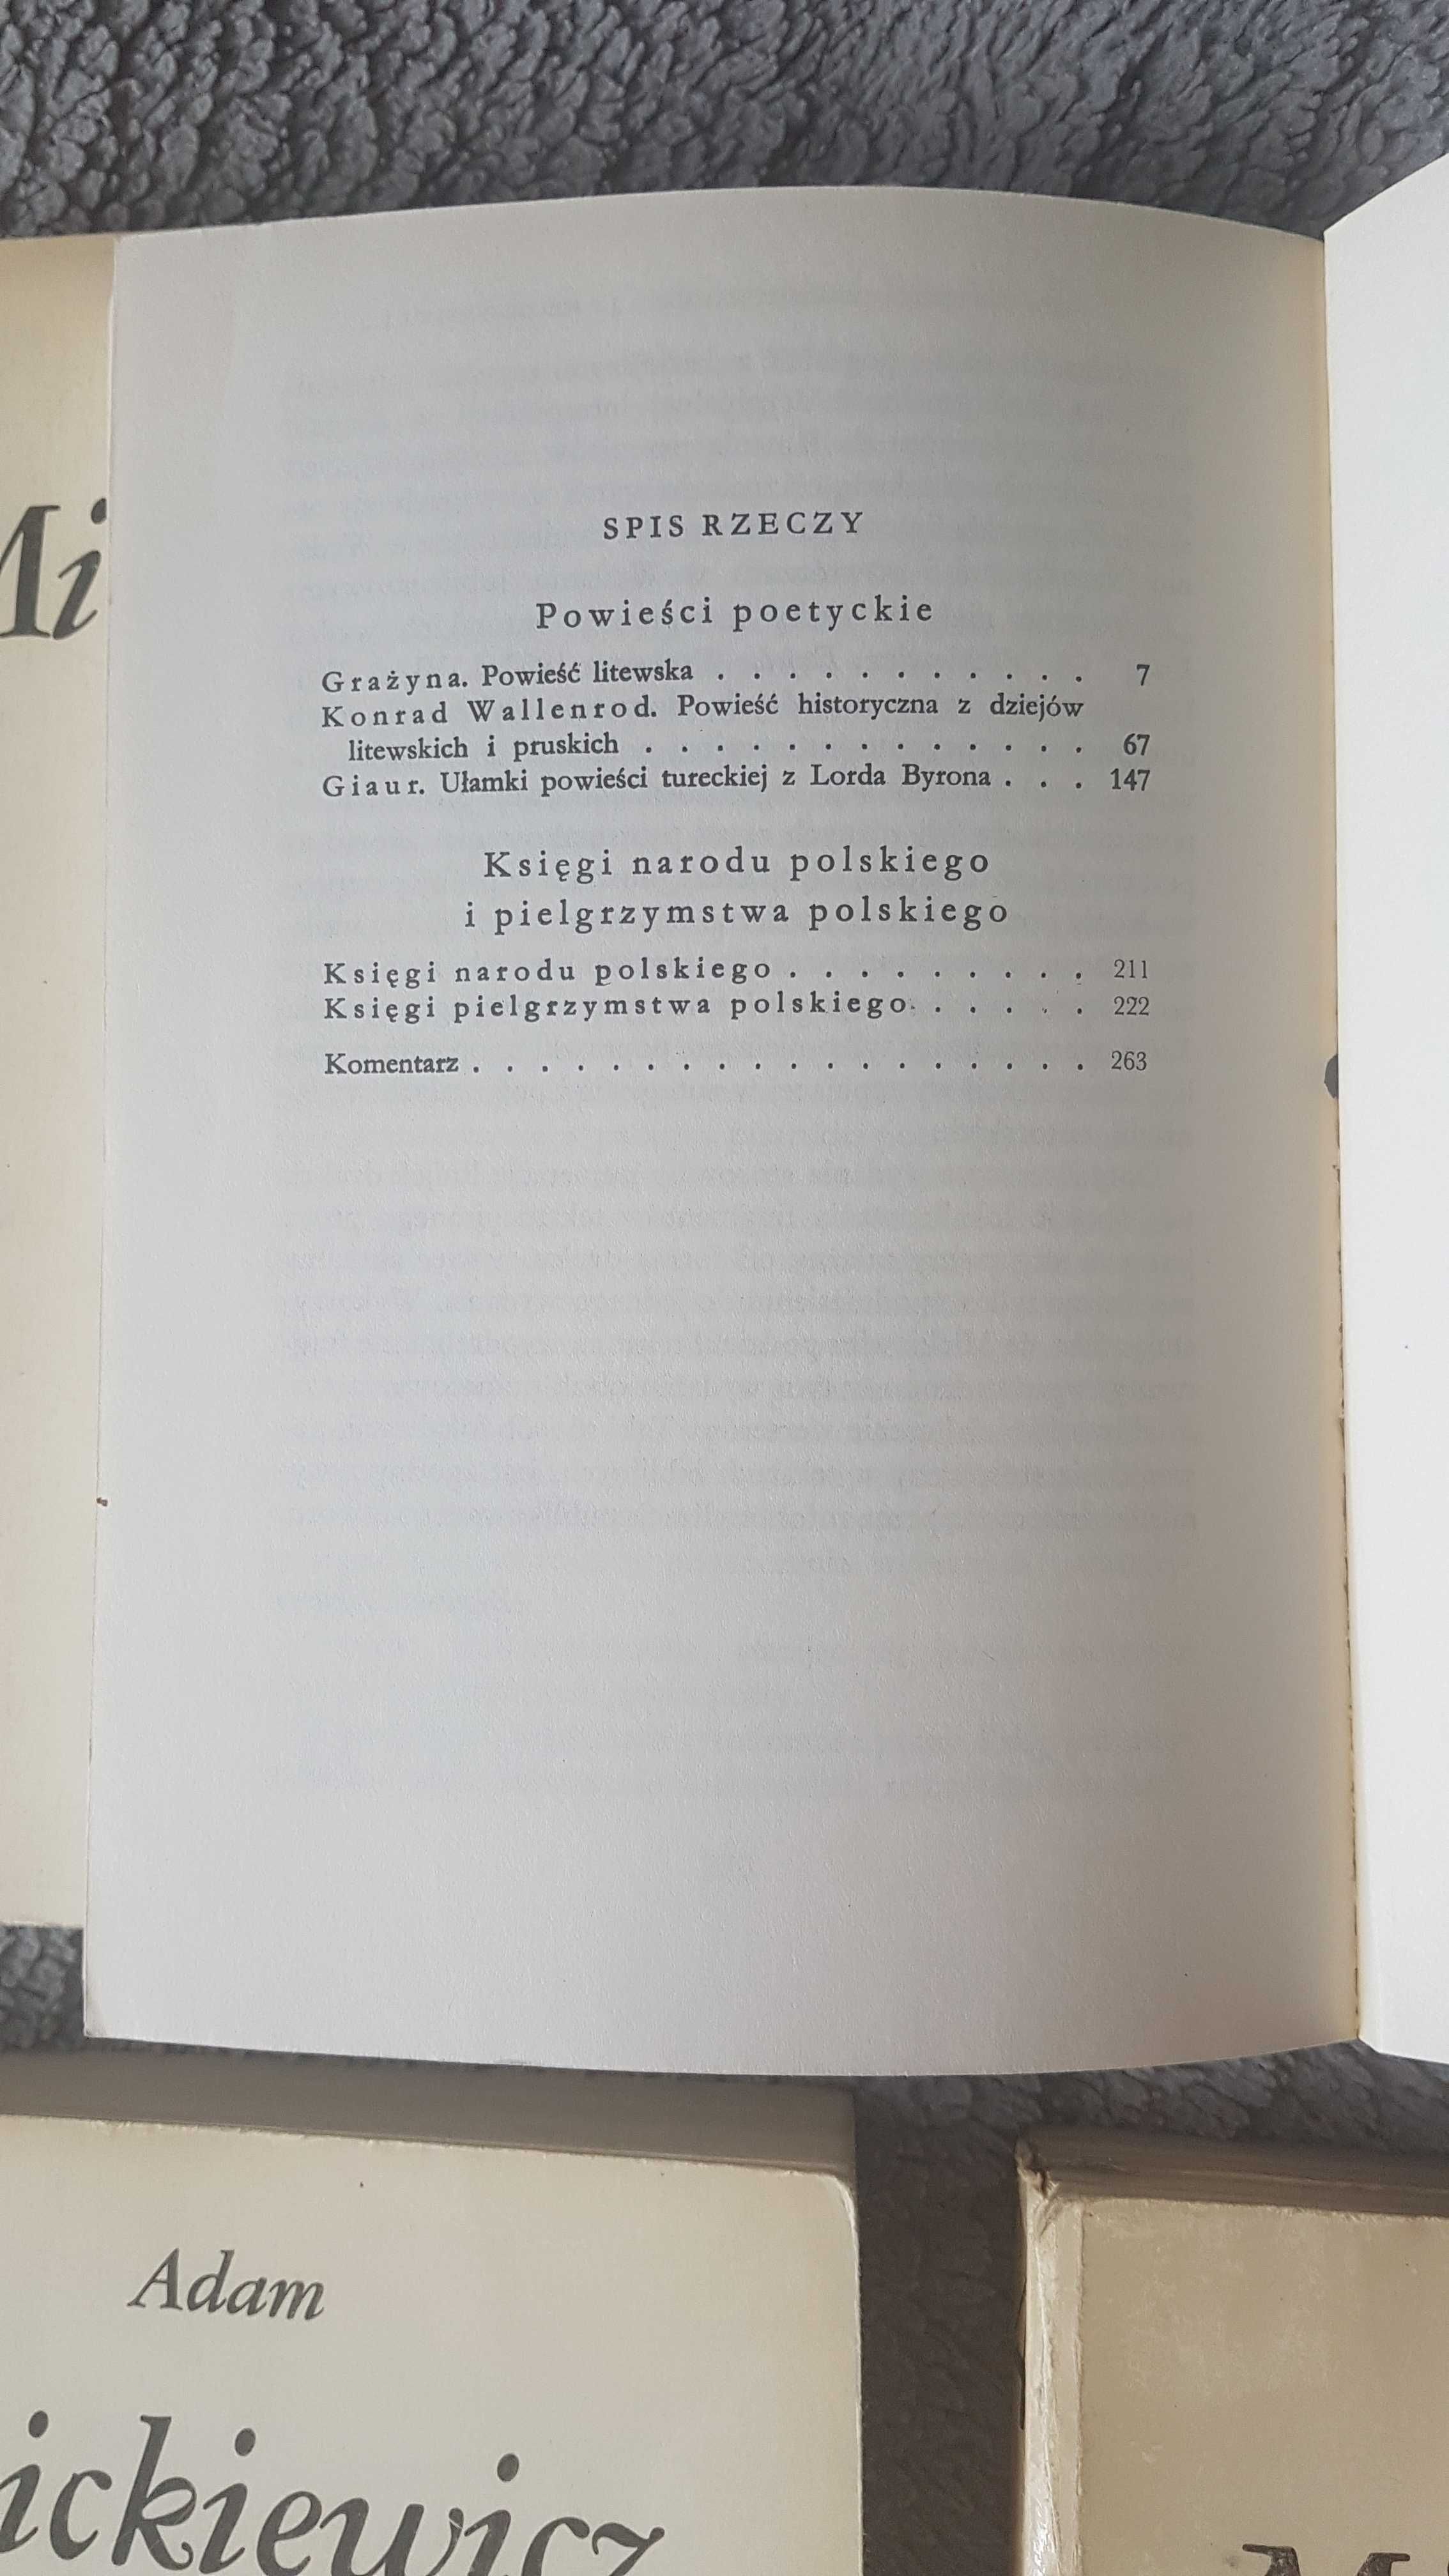 Dzieła Mickiewicza, 4 tomy, Czytelnik